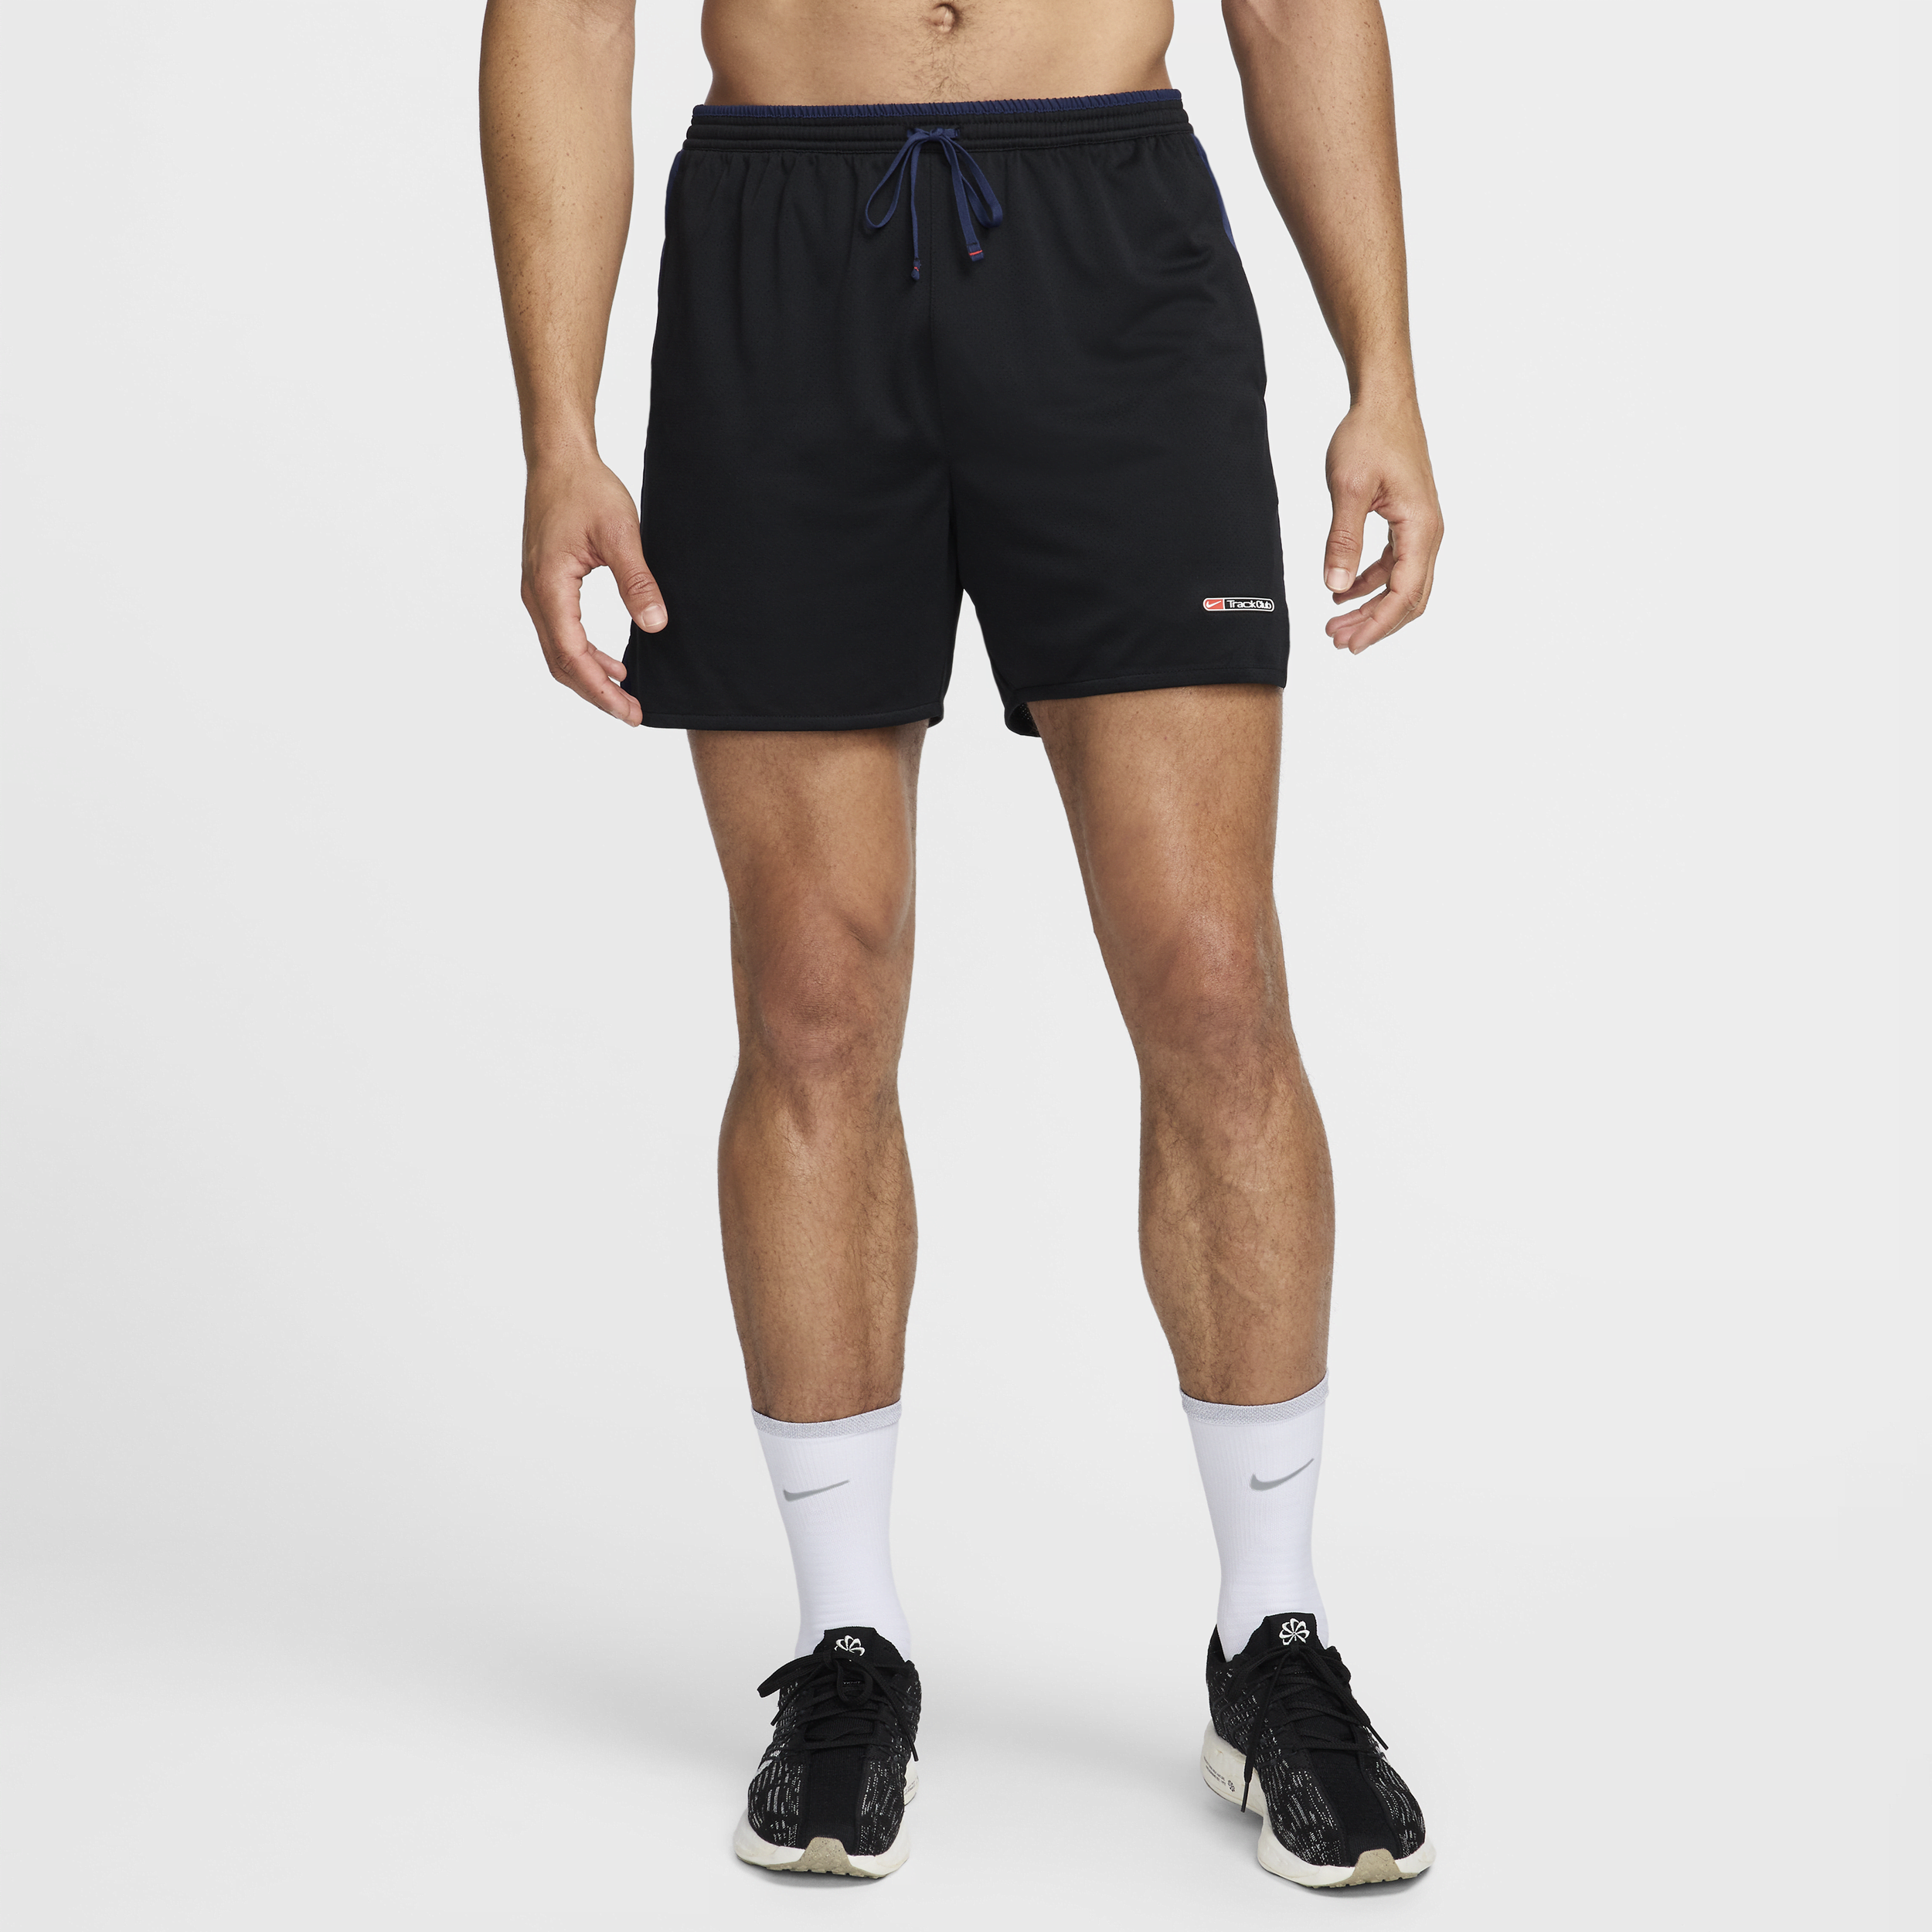 Shorts Nike Track Club Masculina